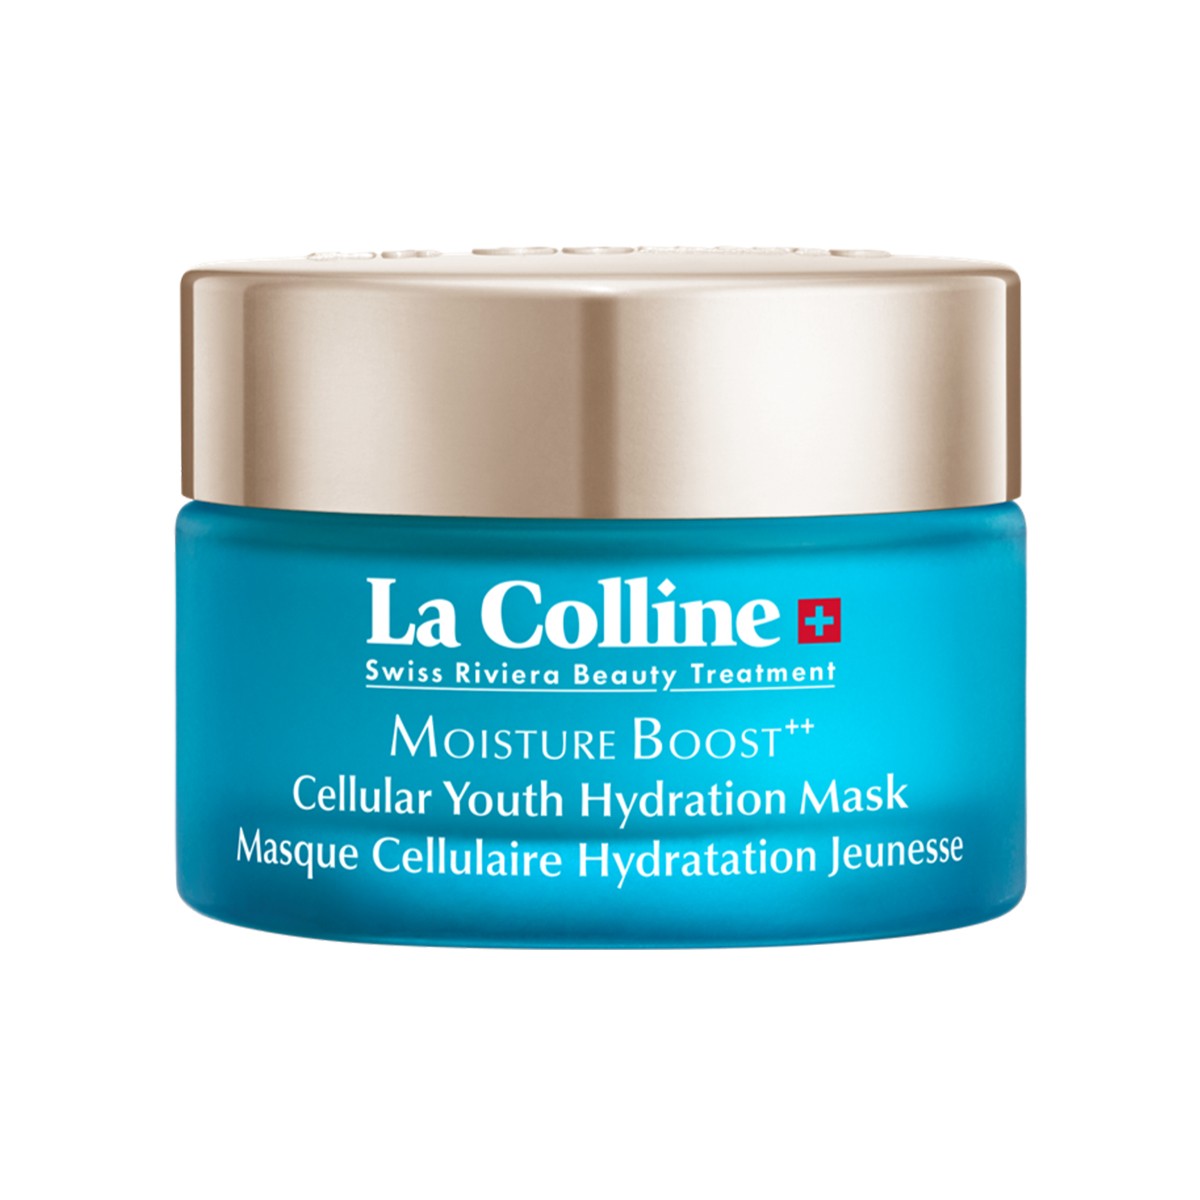 LA COLLINE Cellular Youth Hydration Mask 30 ML Gençleştirici ve Nemlendirici Maske